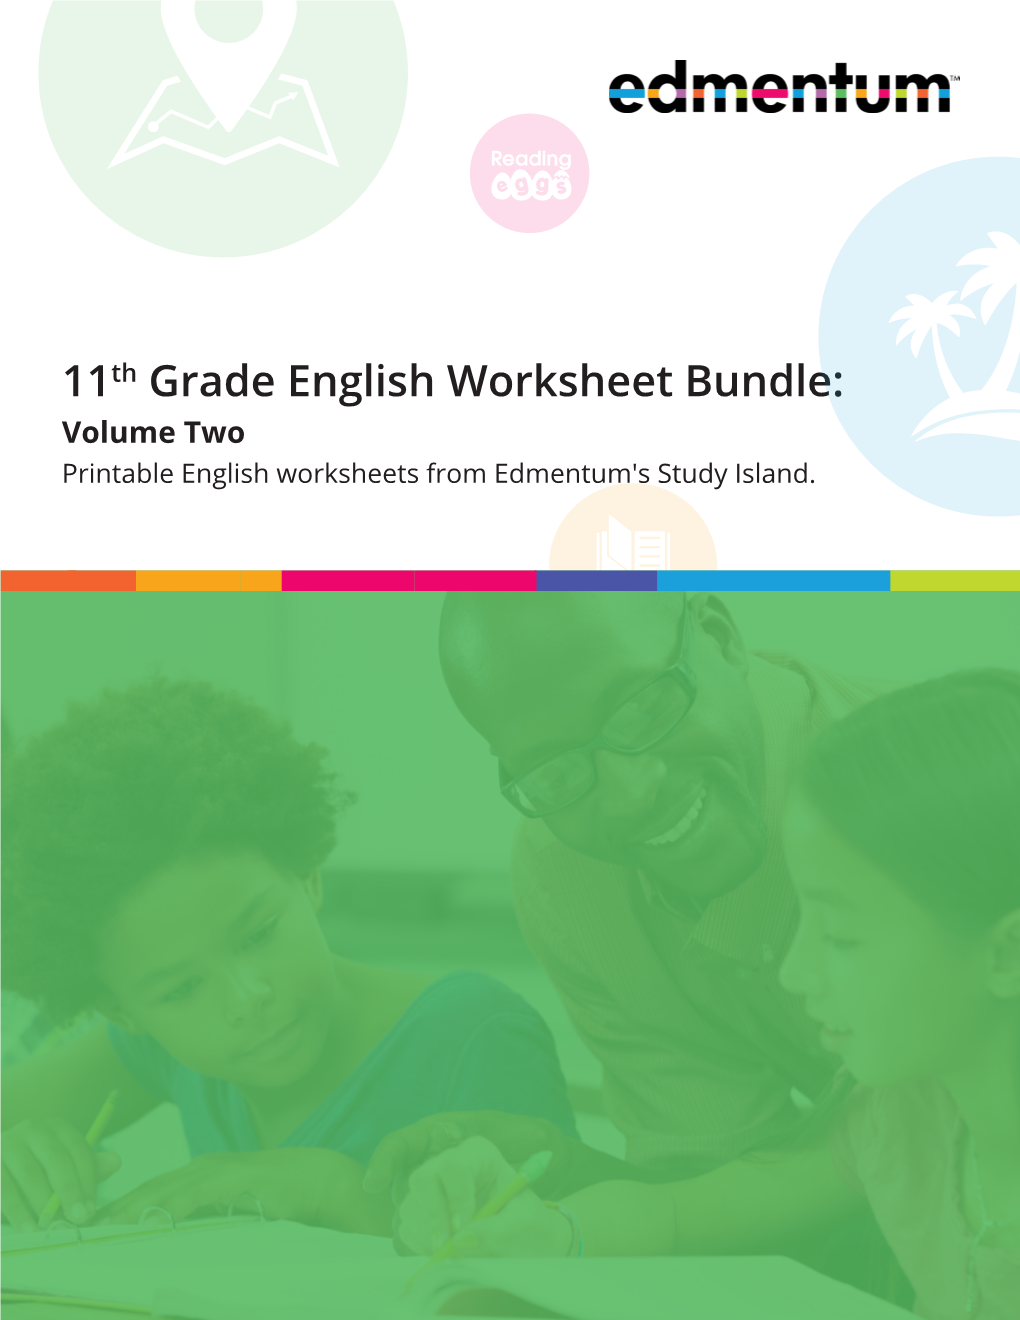 11th-grade-english-worksheet-bundle-volume-two-printable-english